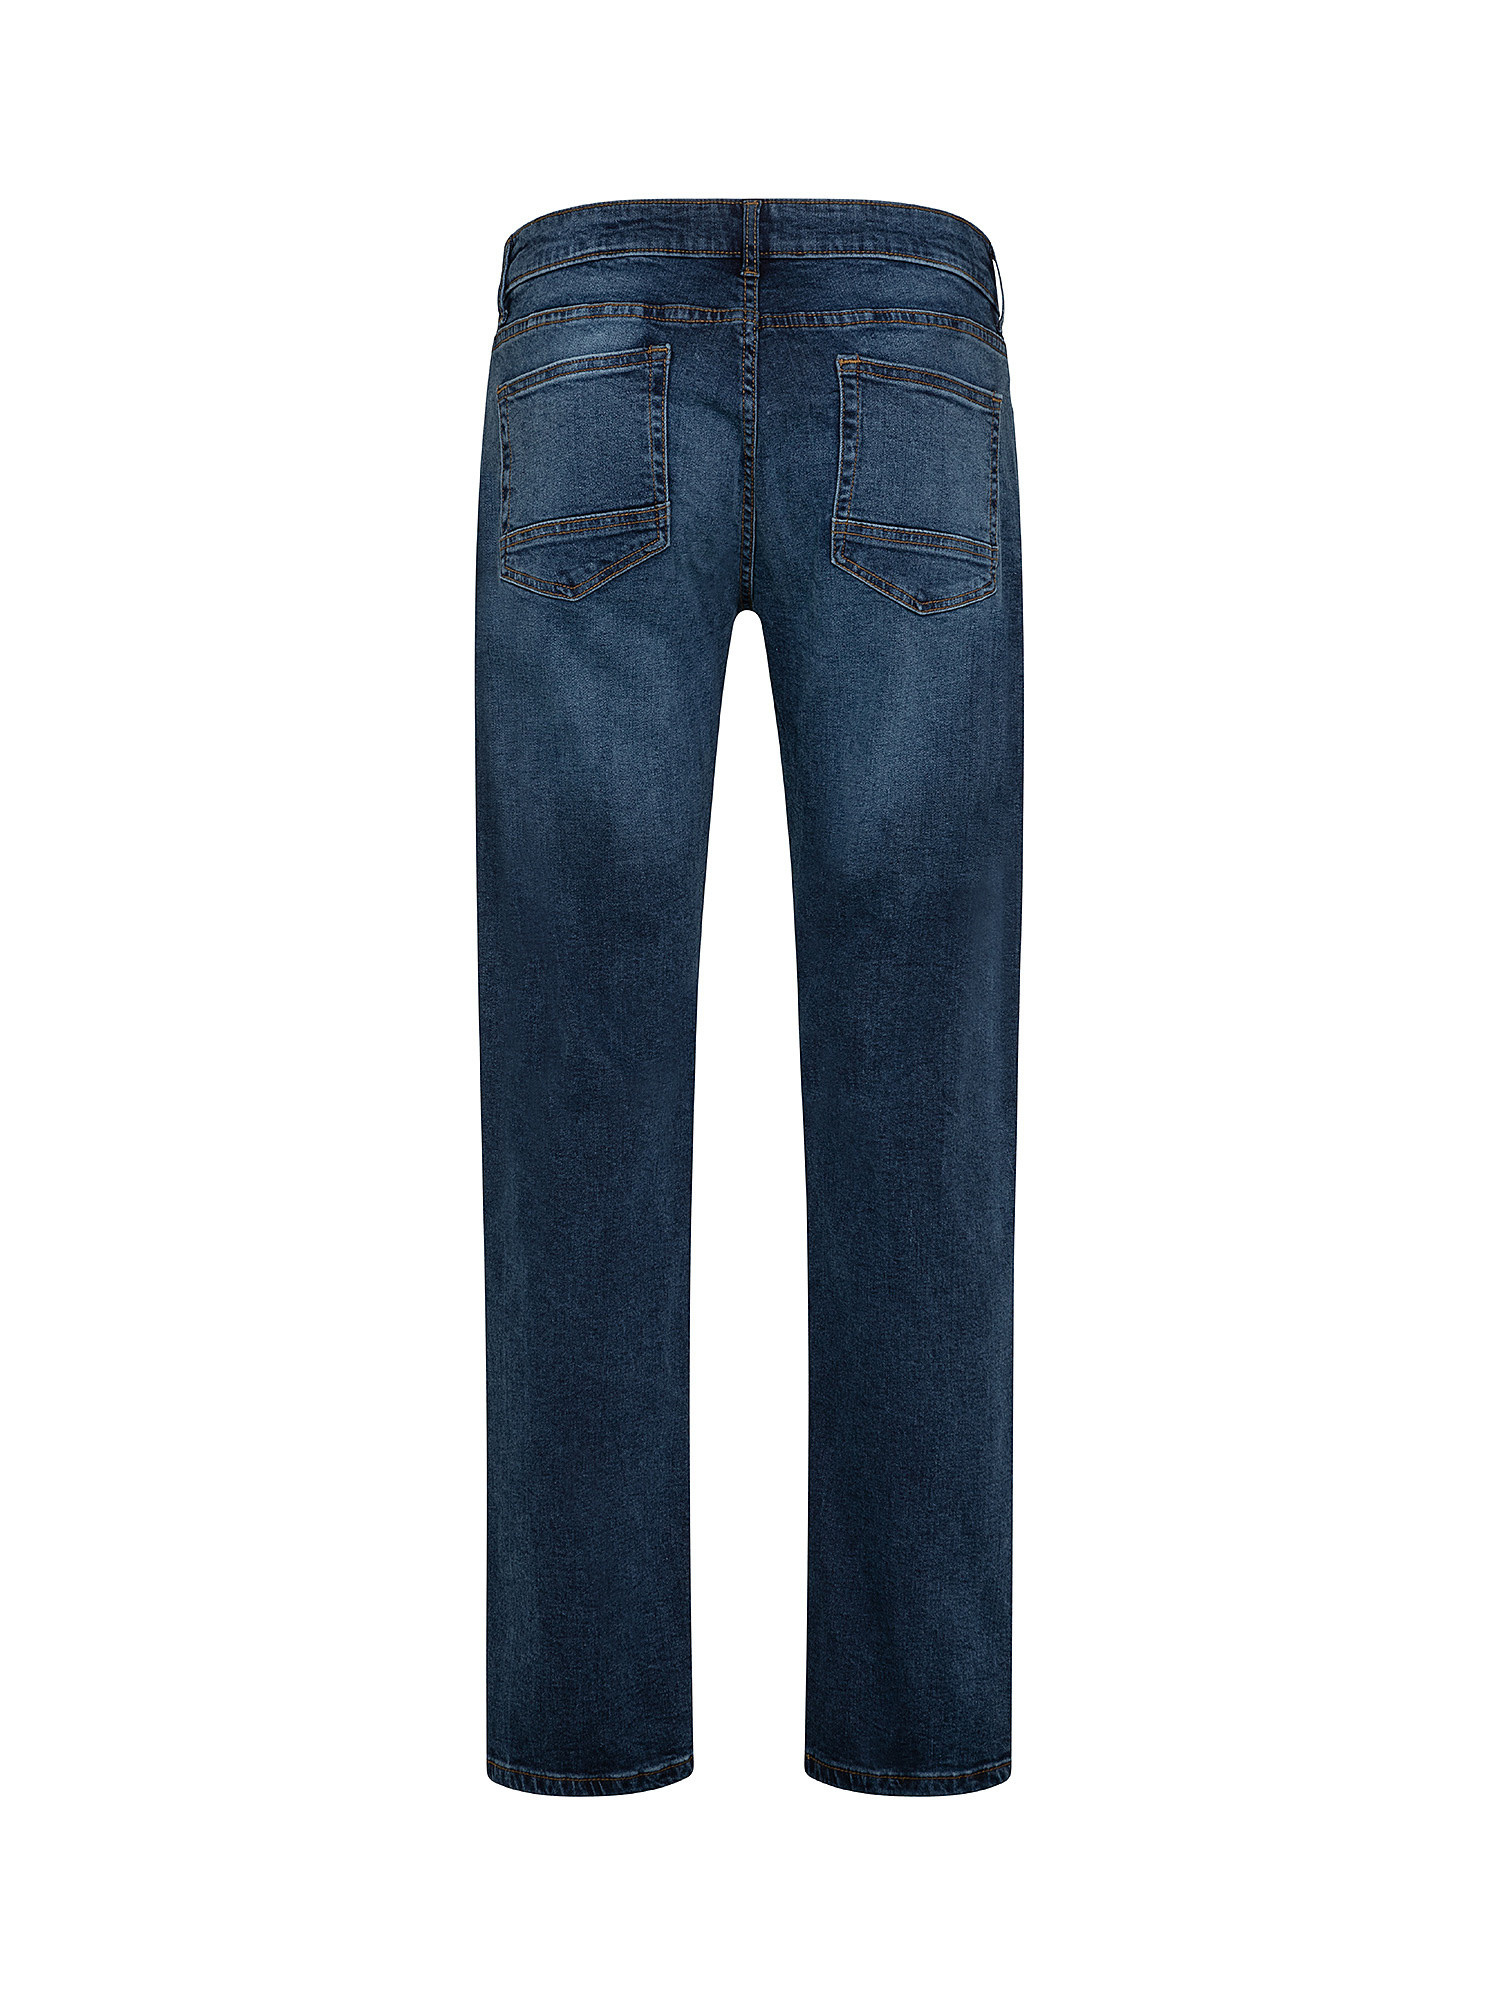 Jeans 5 tasche slim cotone stretch, Blu scuro, large